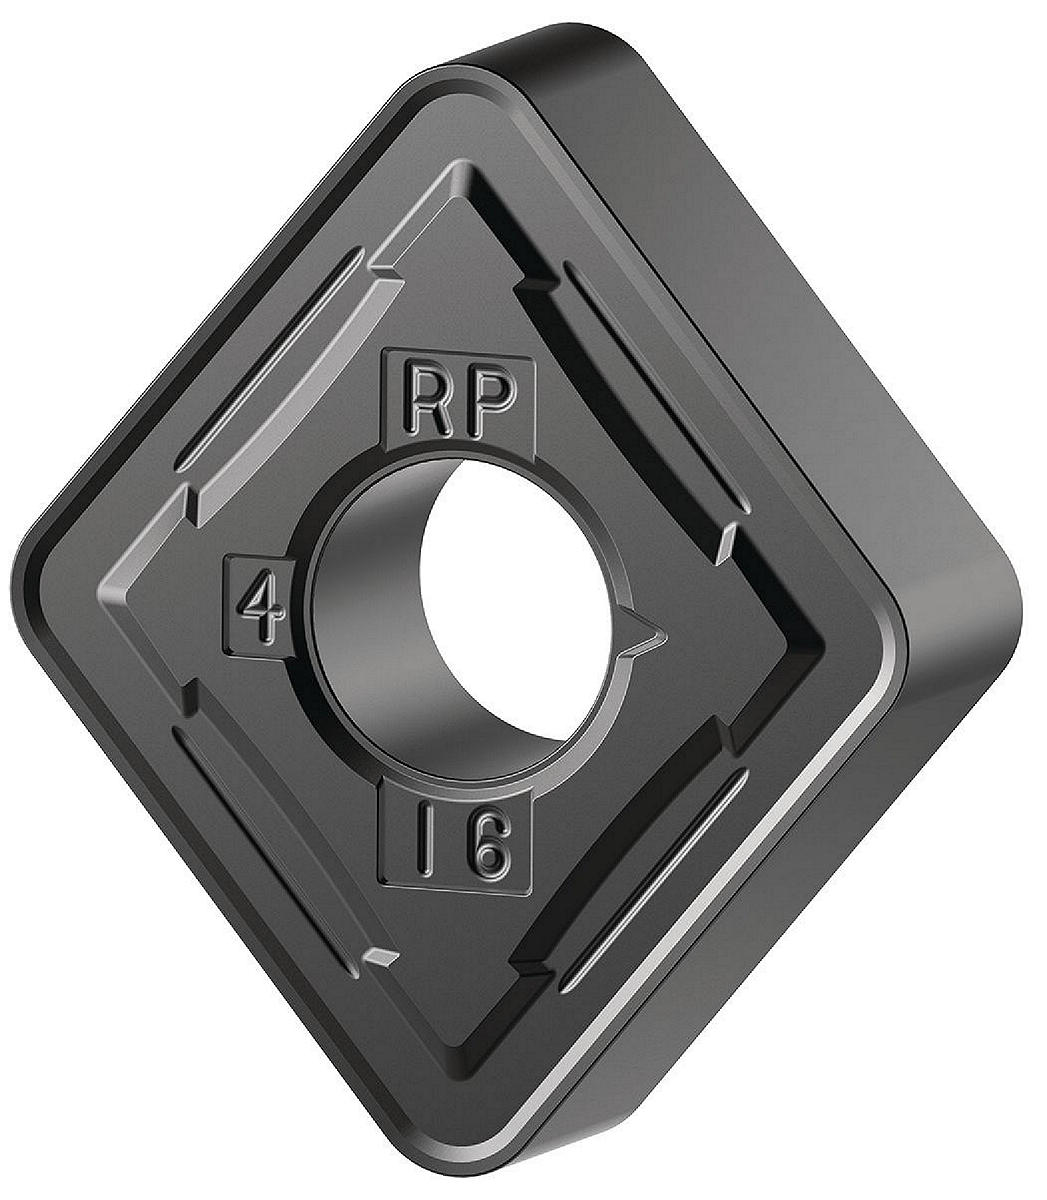 Inserto in metallo duro per tornitura ISO • Geometria positiva, sgrossatura